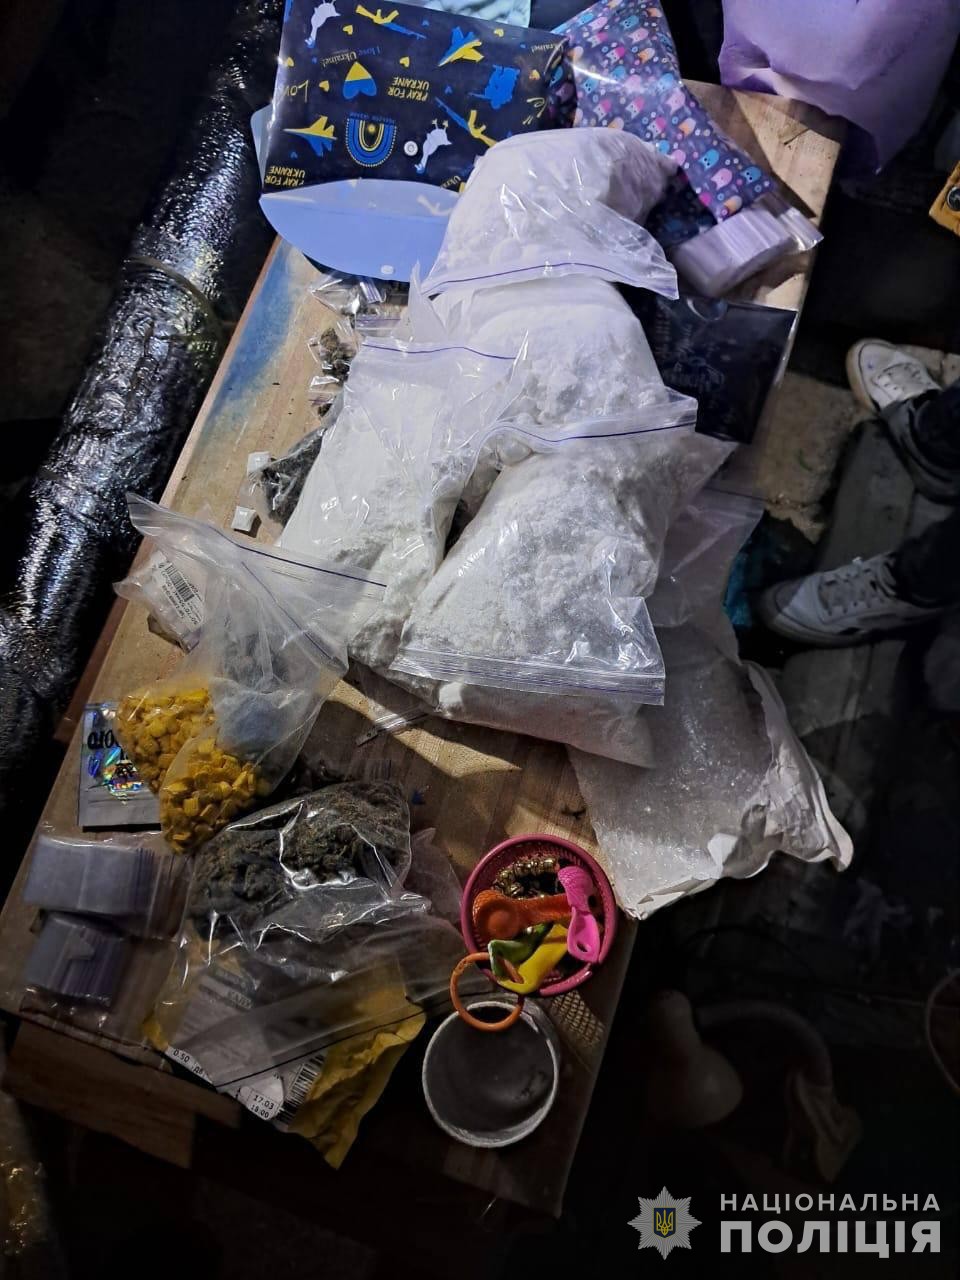 Нацполиция изъяла наркотики на 150 млн грн: Одесская область также была в сети наркодилеров